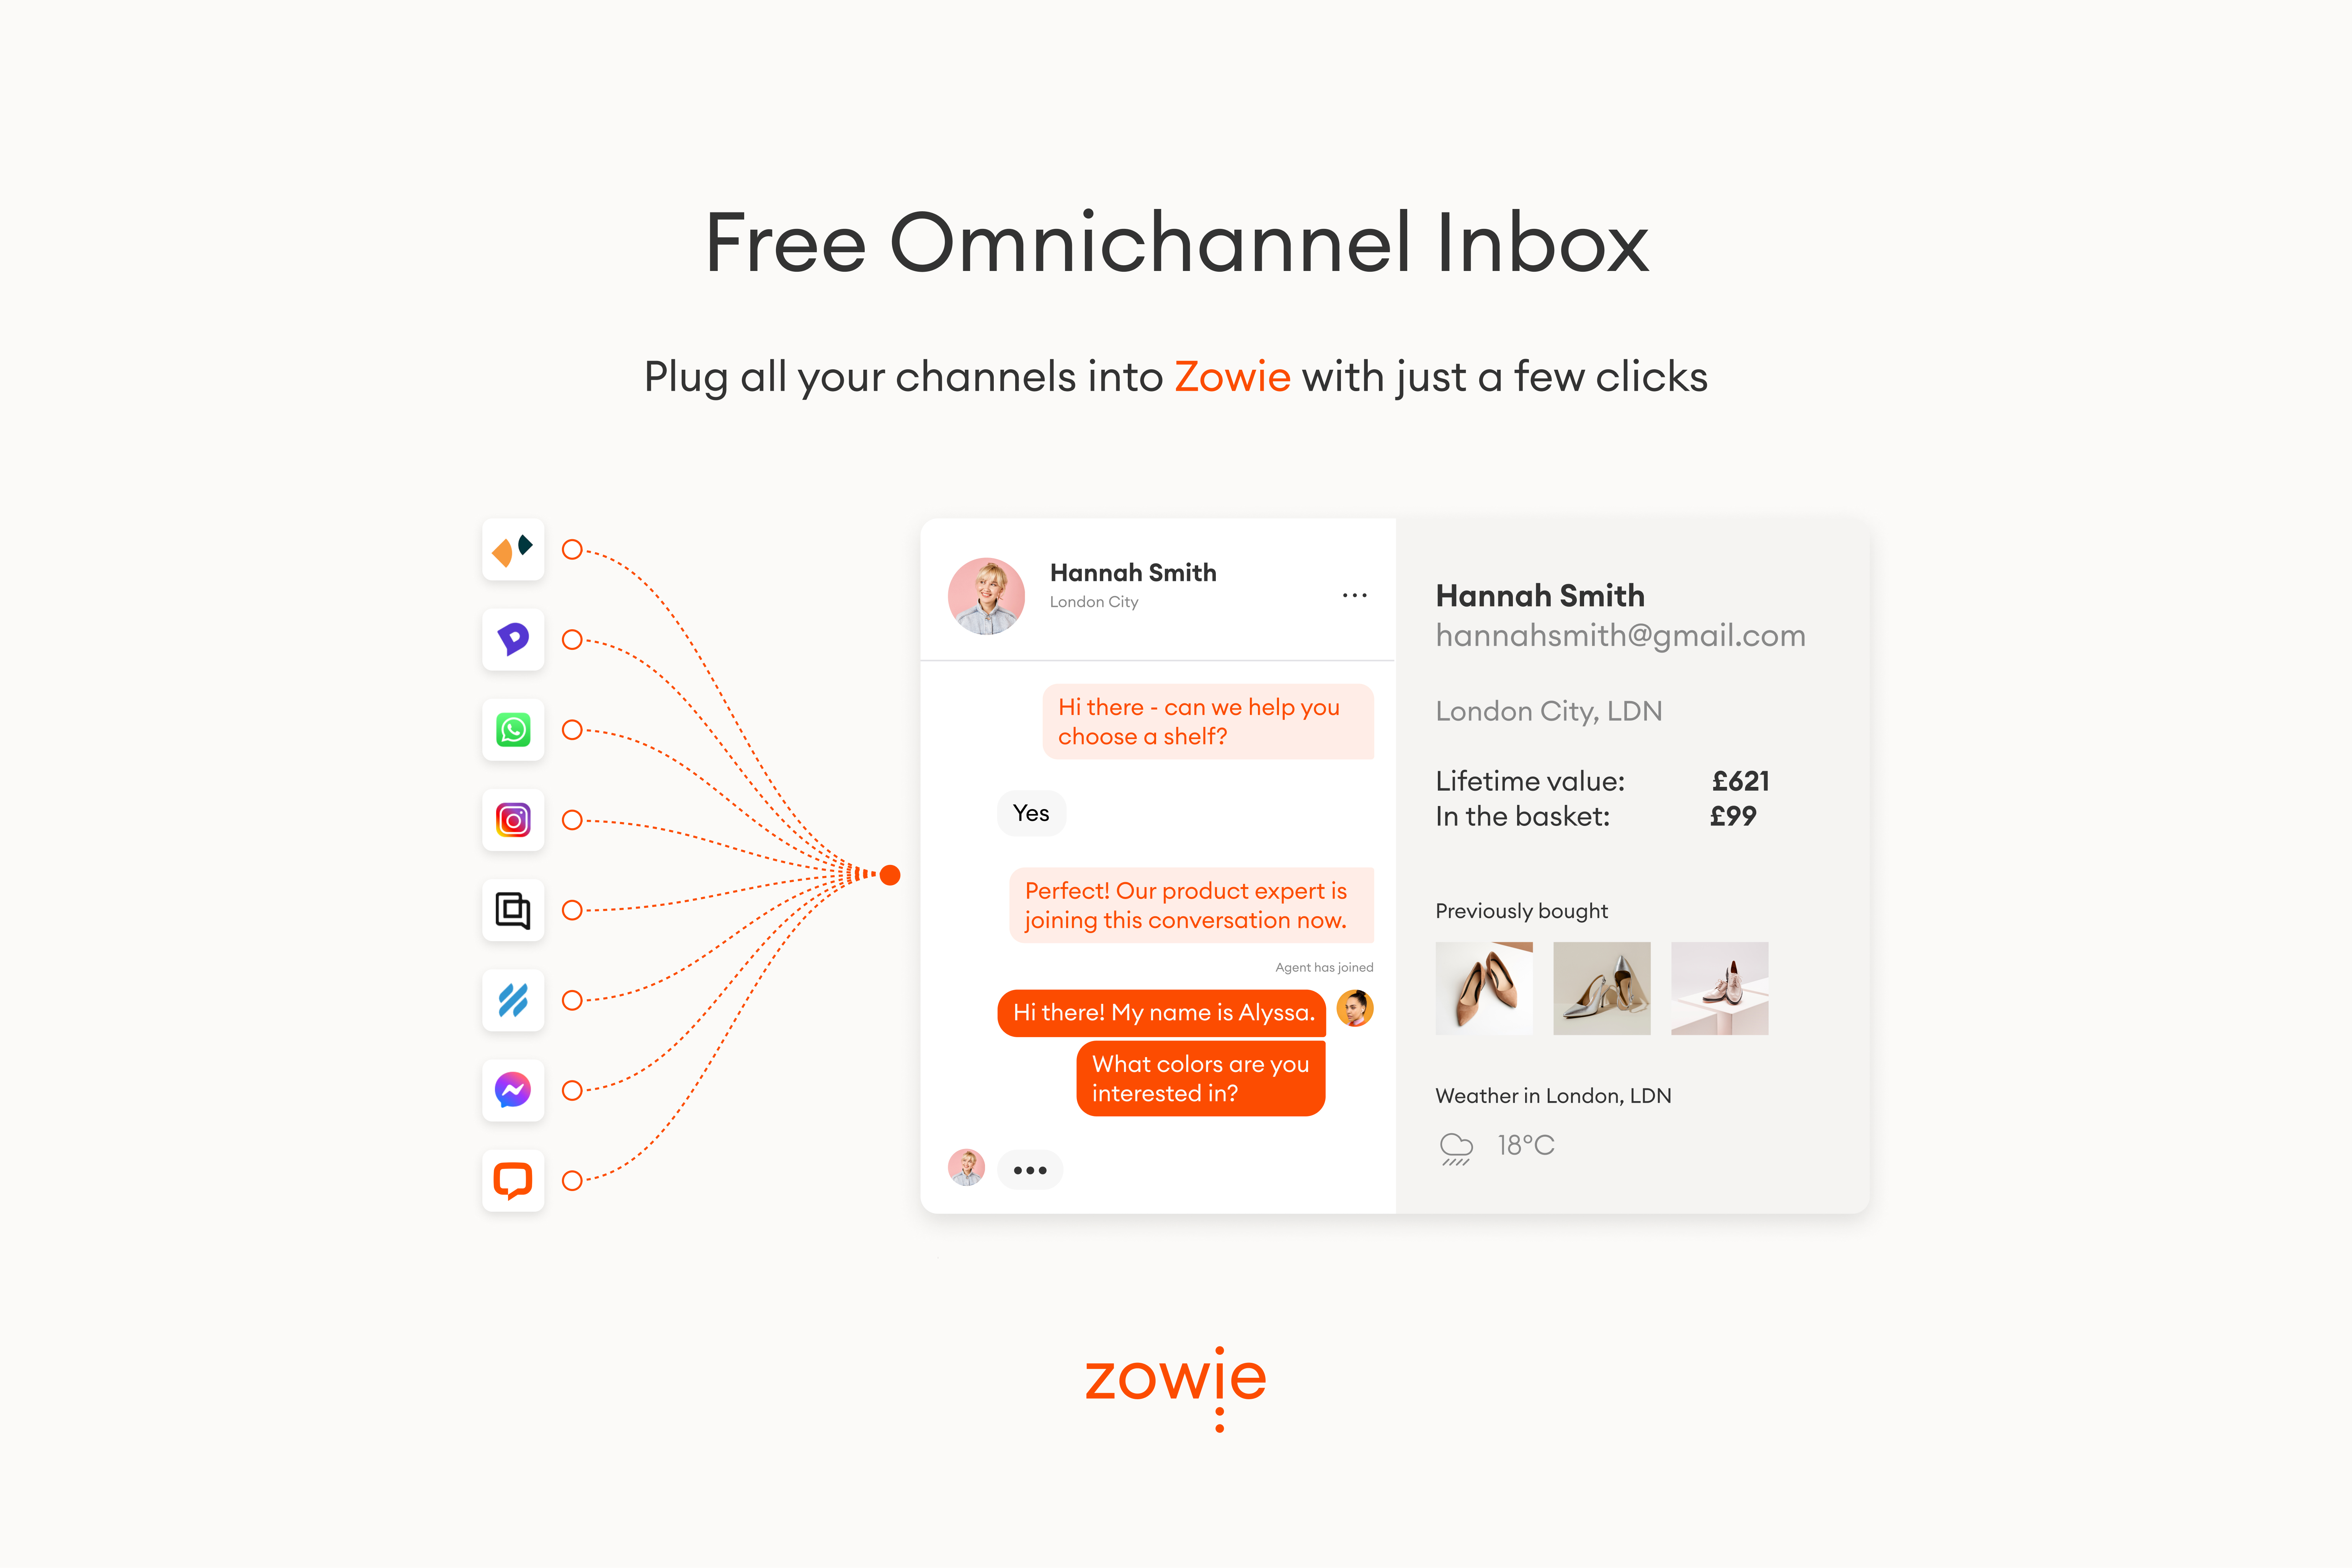 Free omnichannel inbox | Get savings on tech.